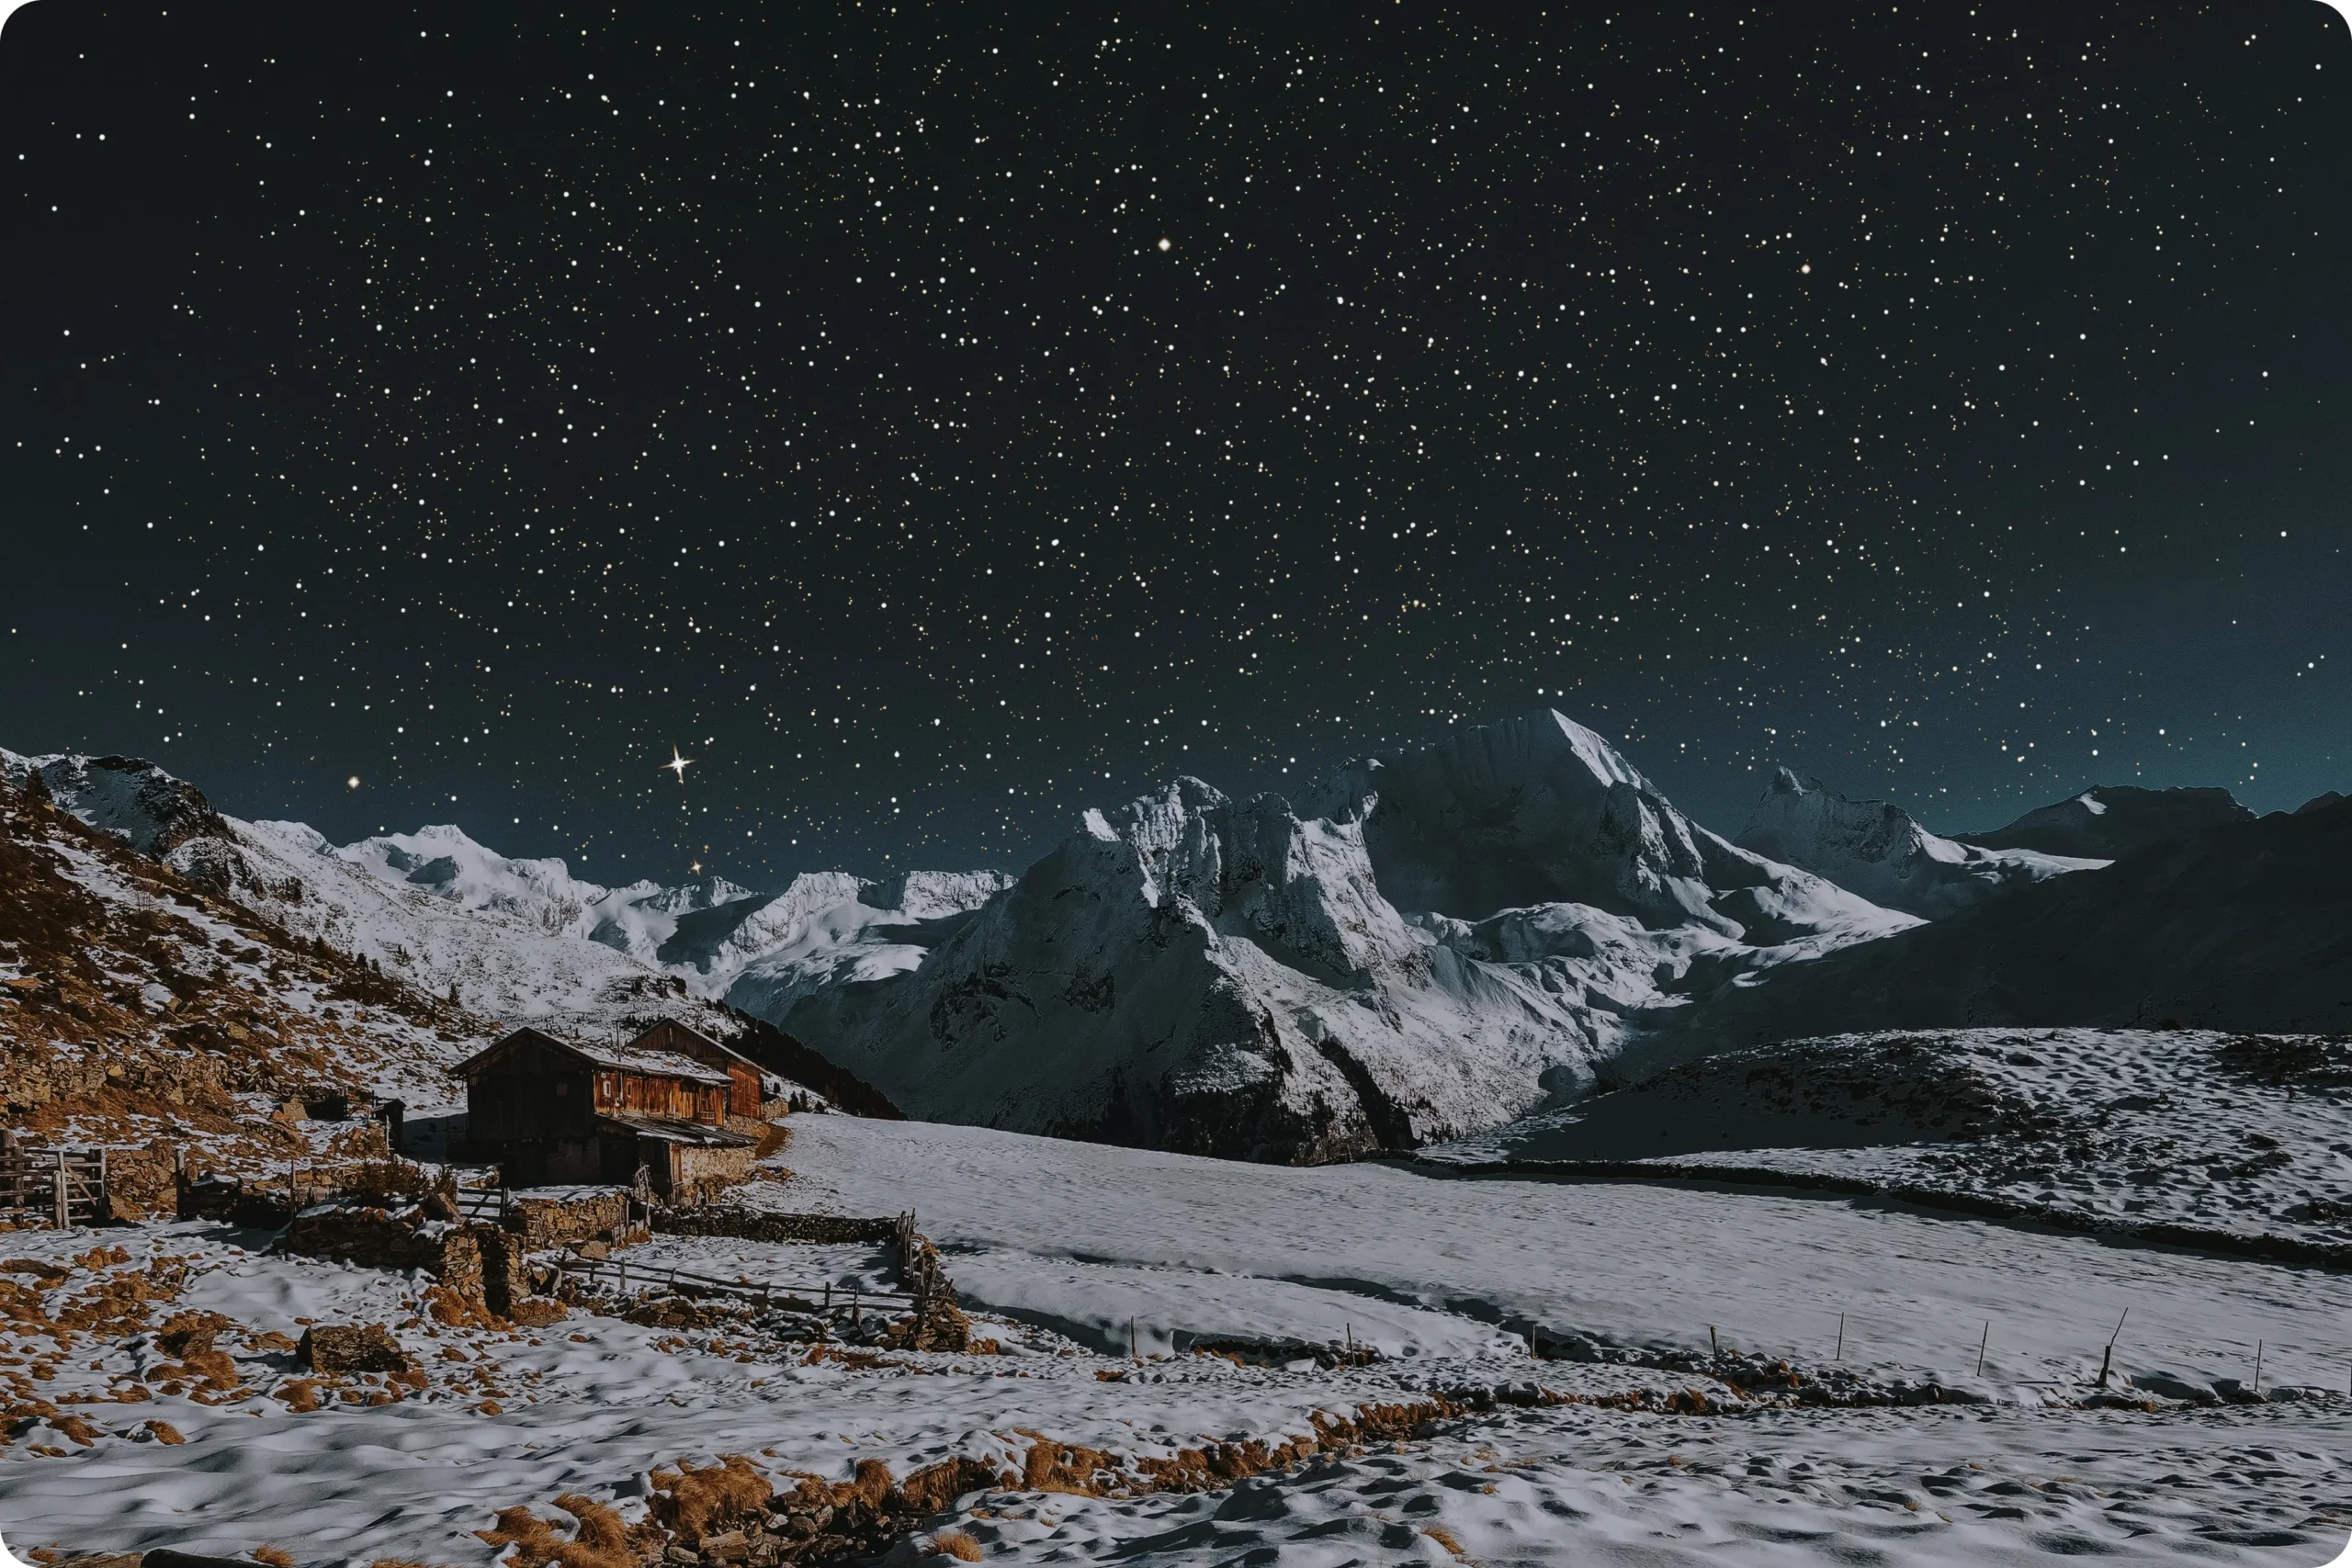 Galerij van winterse nachtscènes vastgelegd met de Nachtmodus van de iPhone